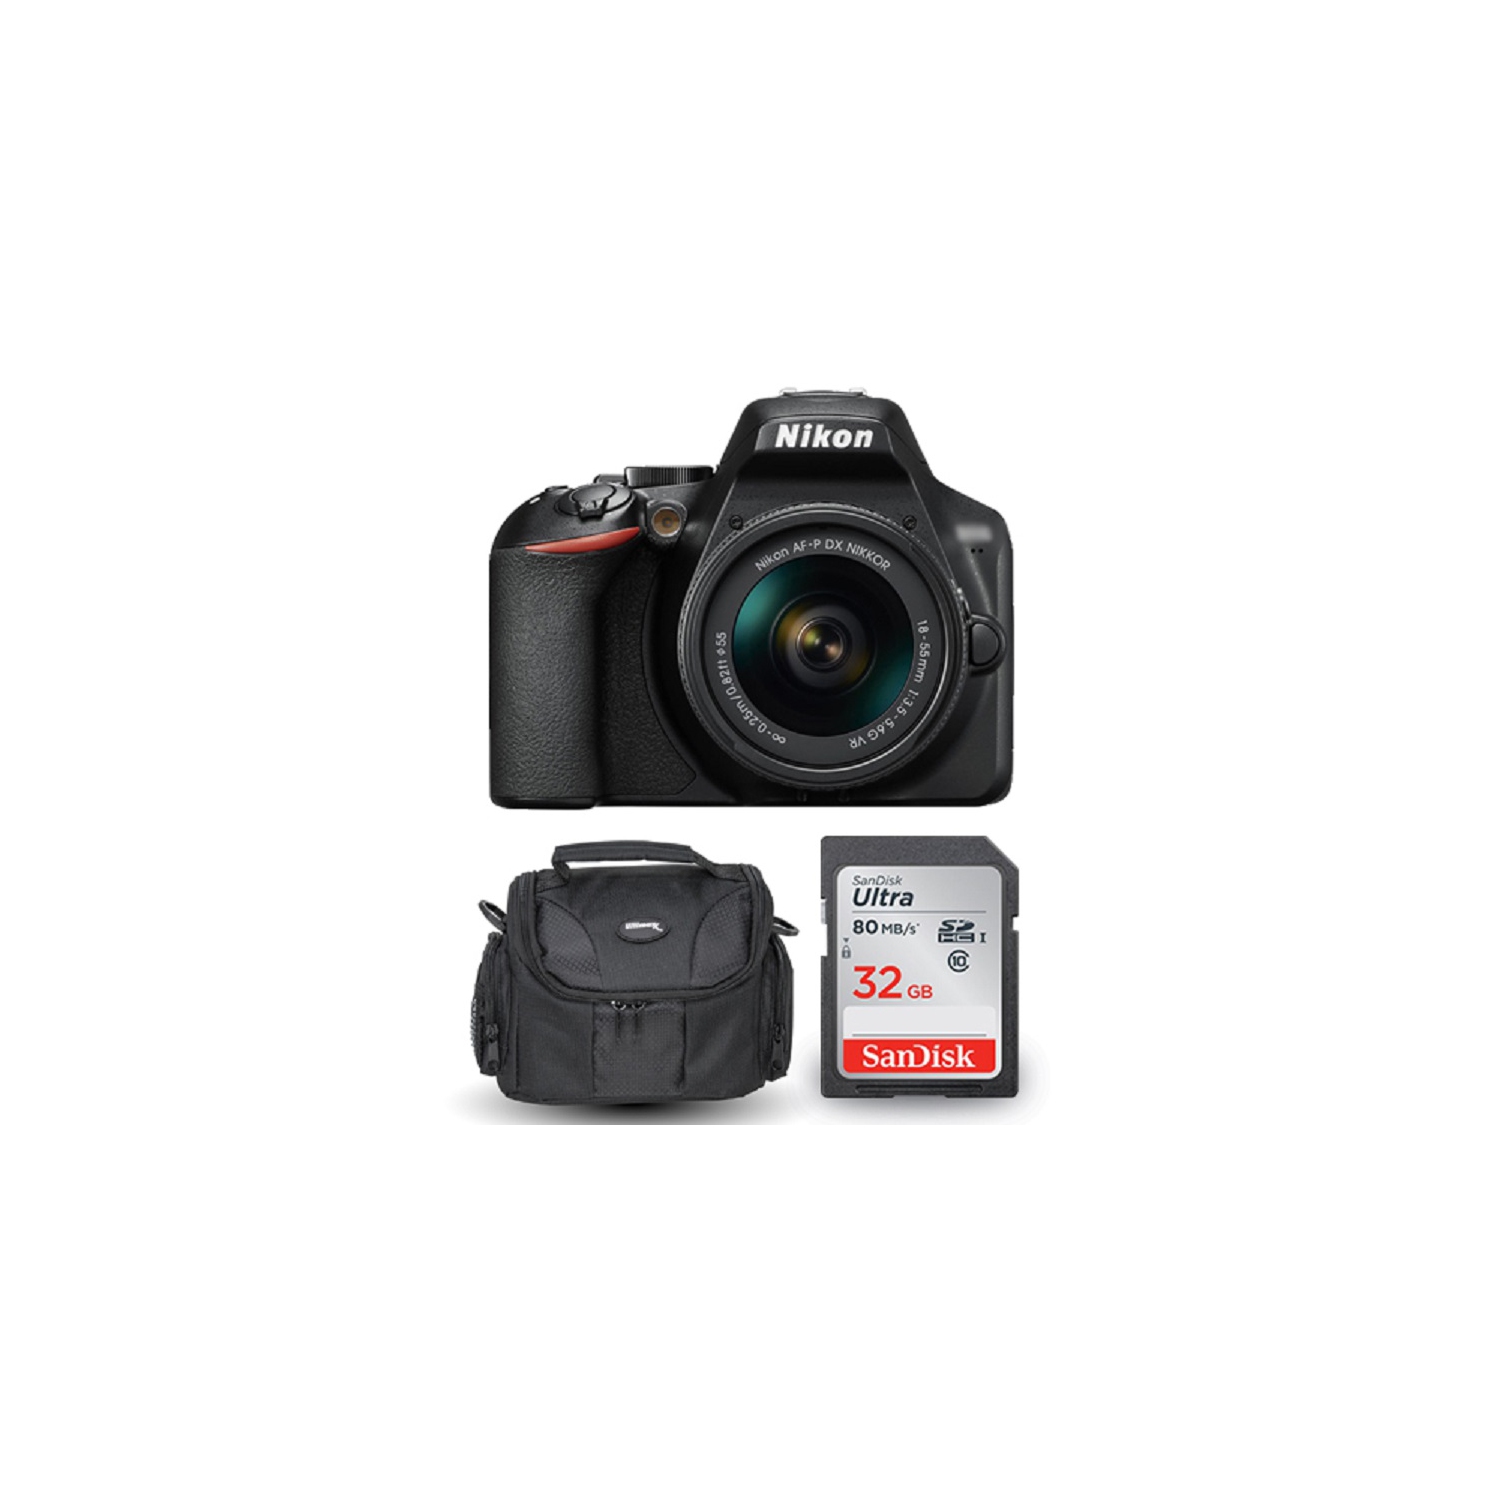 Nikon D3500 DSLR Camera with 18-55mm VR Lens 1590 + Sandisk 32GB and Gadget Case